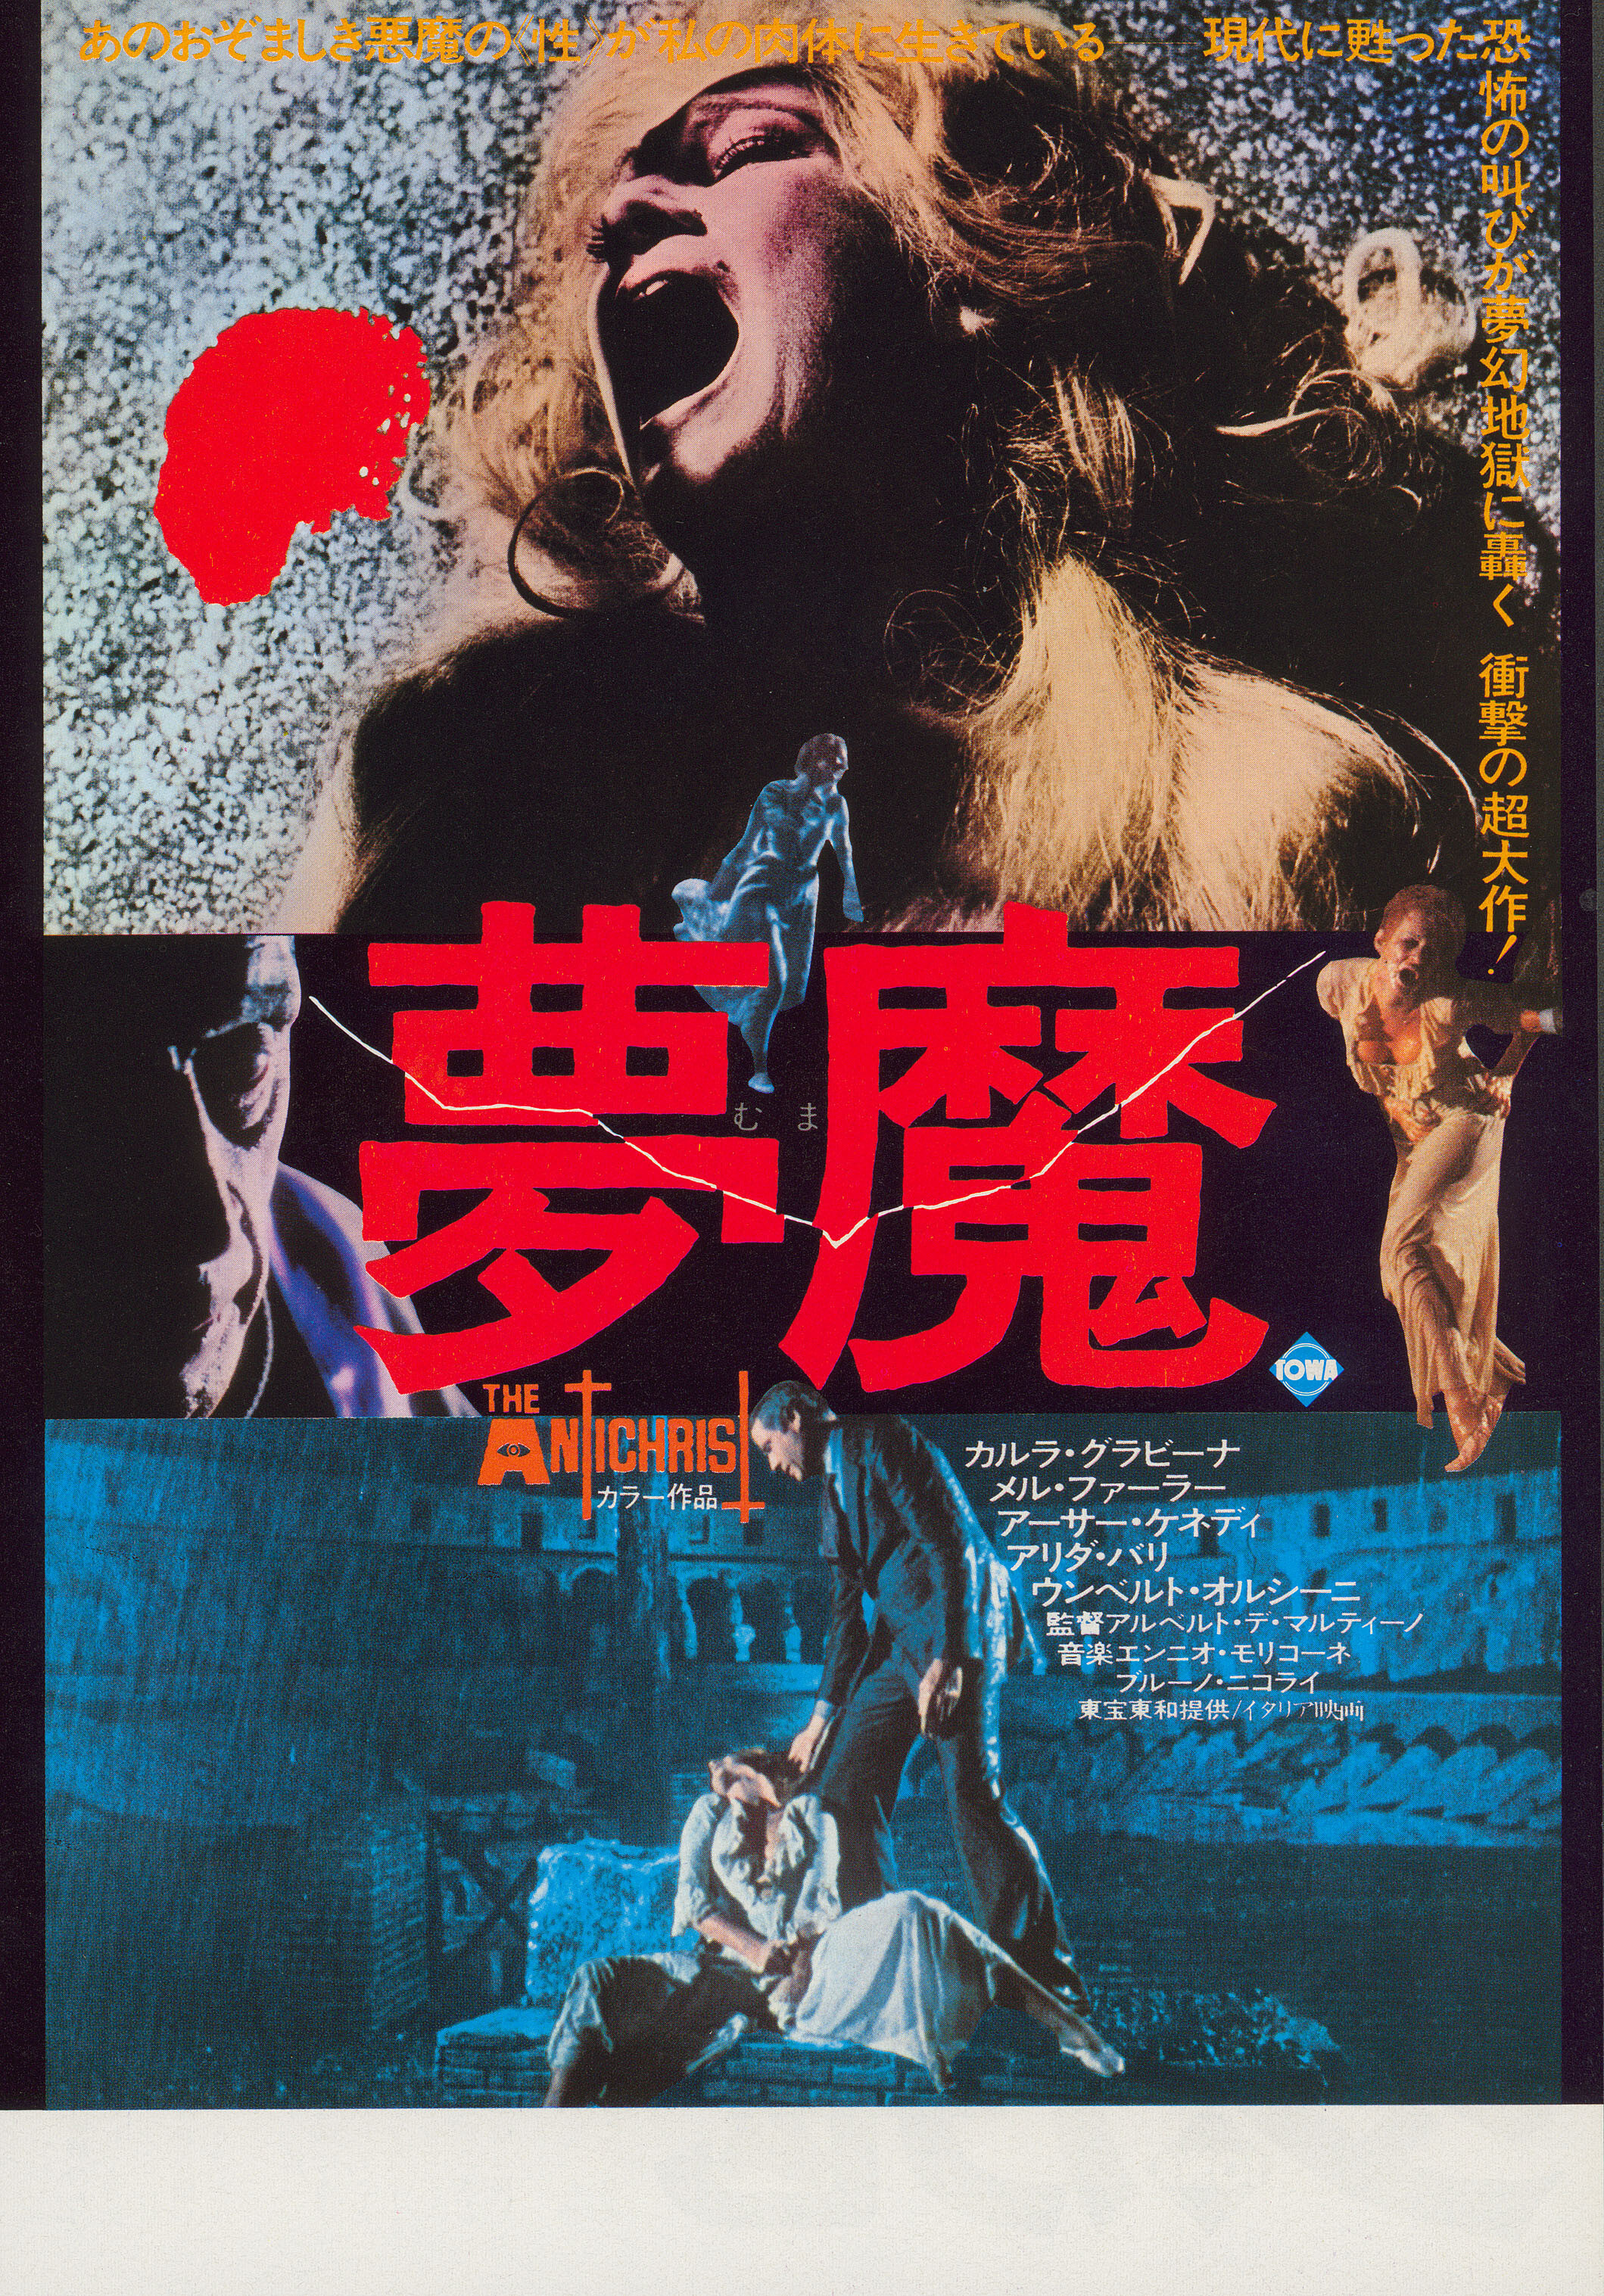 Антихрист (The Antichrist, 1974), режиссёр Альберто Де Мартино, японский постер к фильму (ужасы, 1974 год)